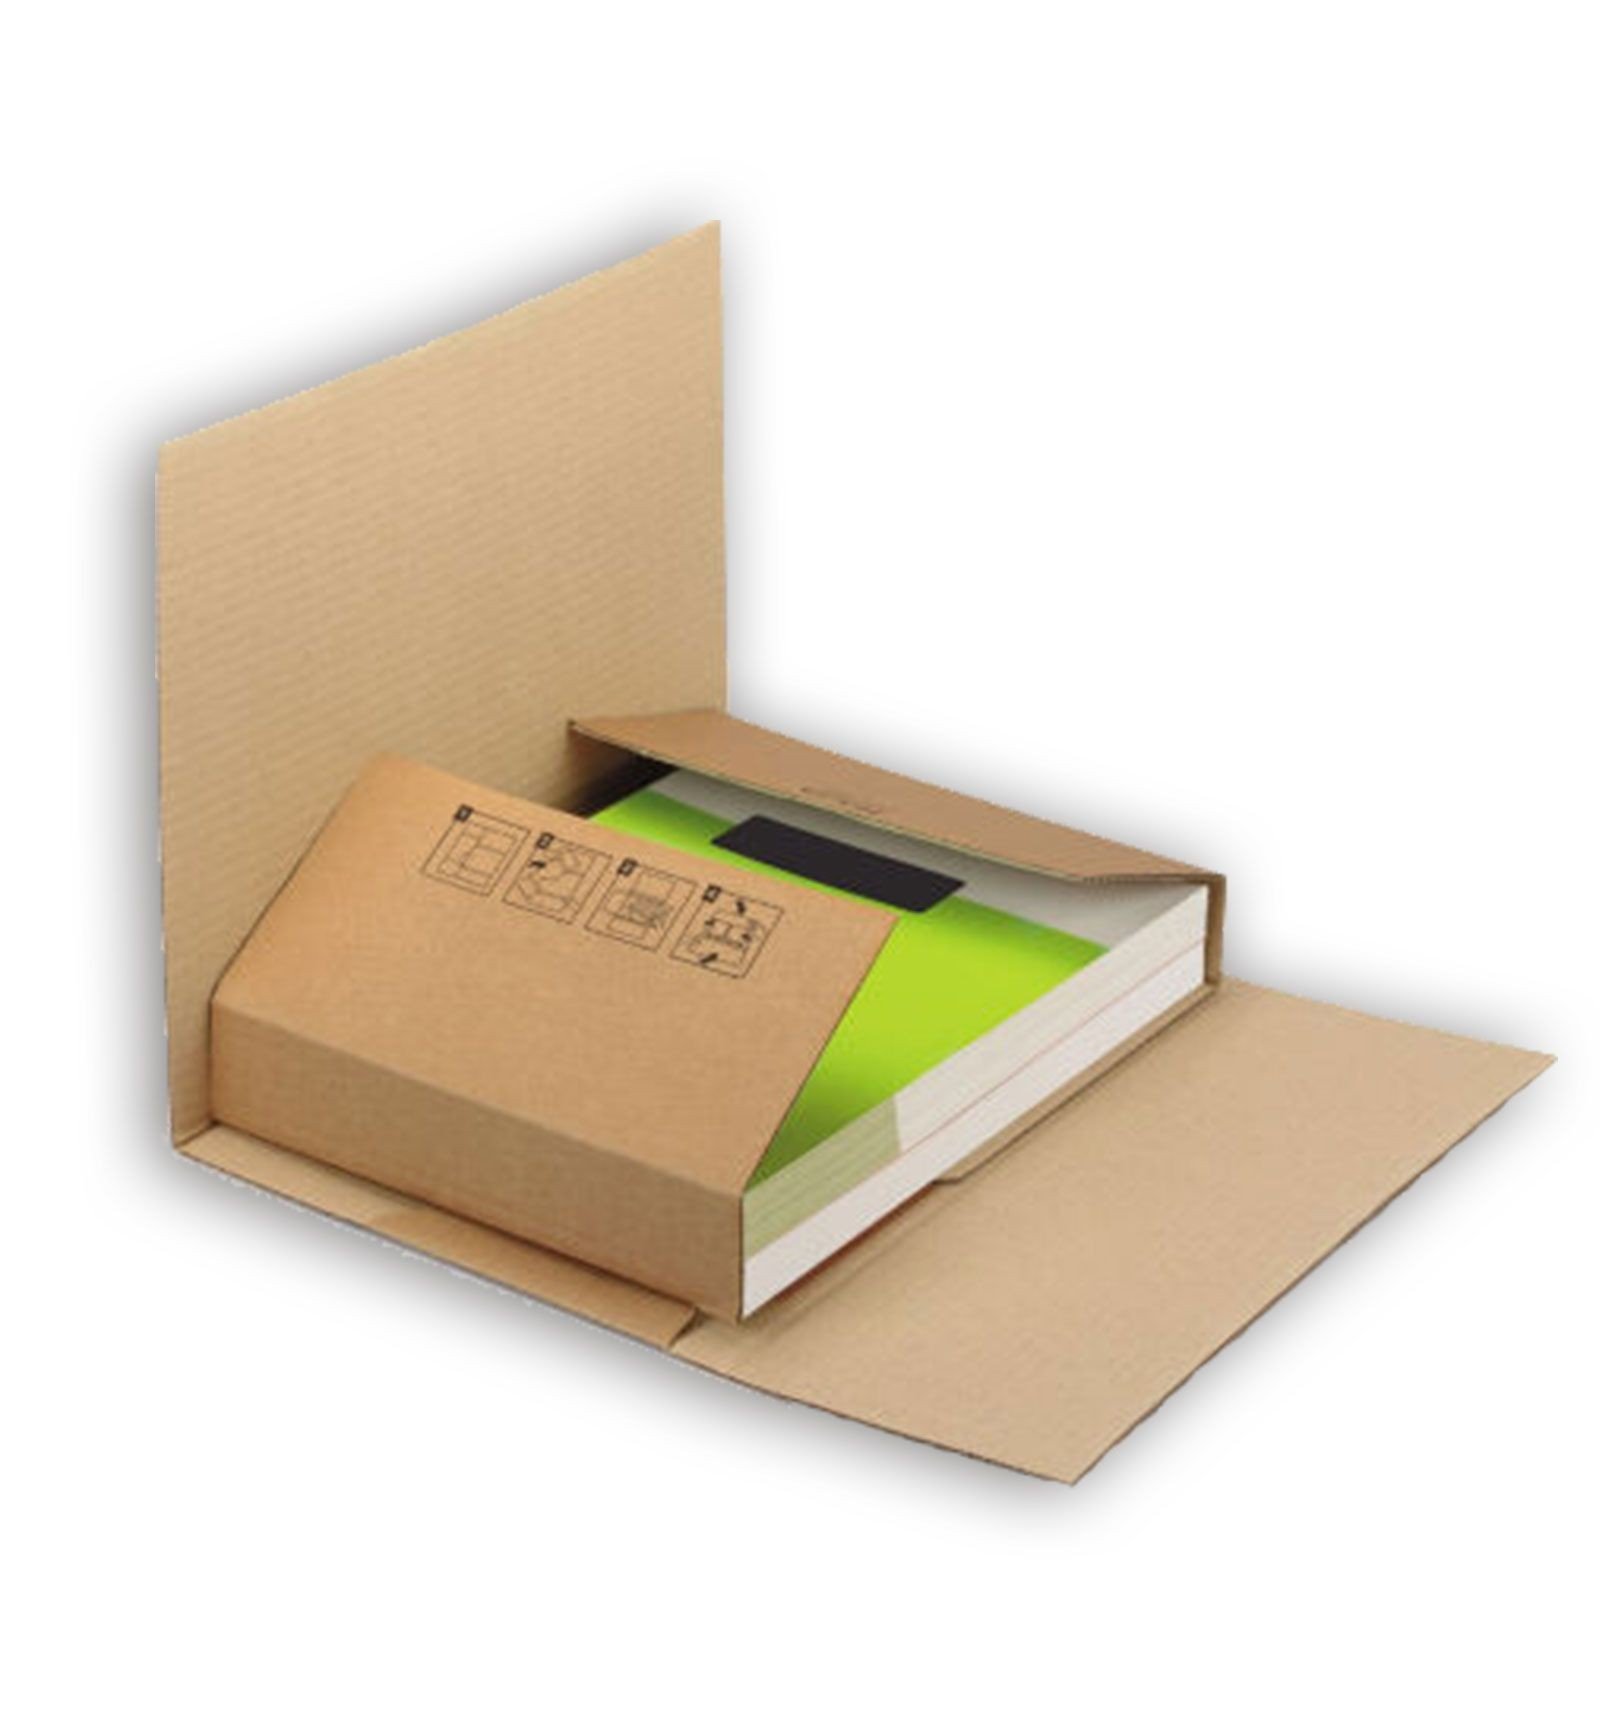 Caja para enviar libros